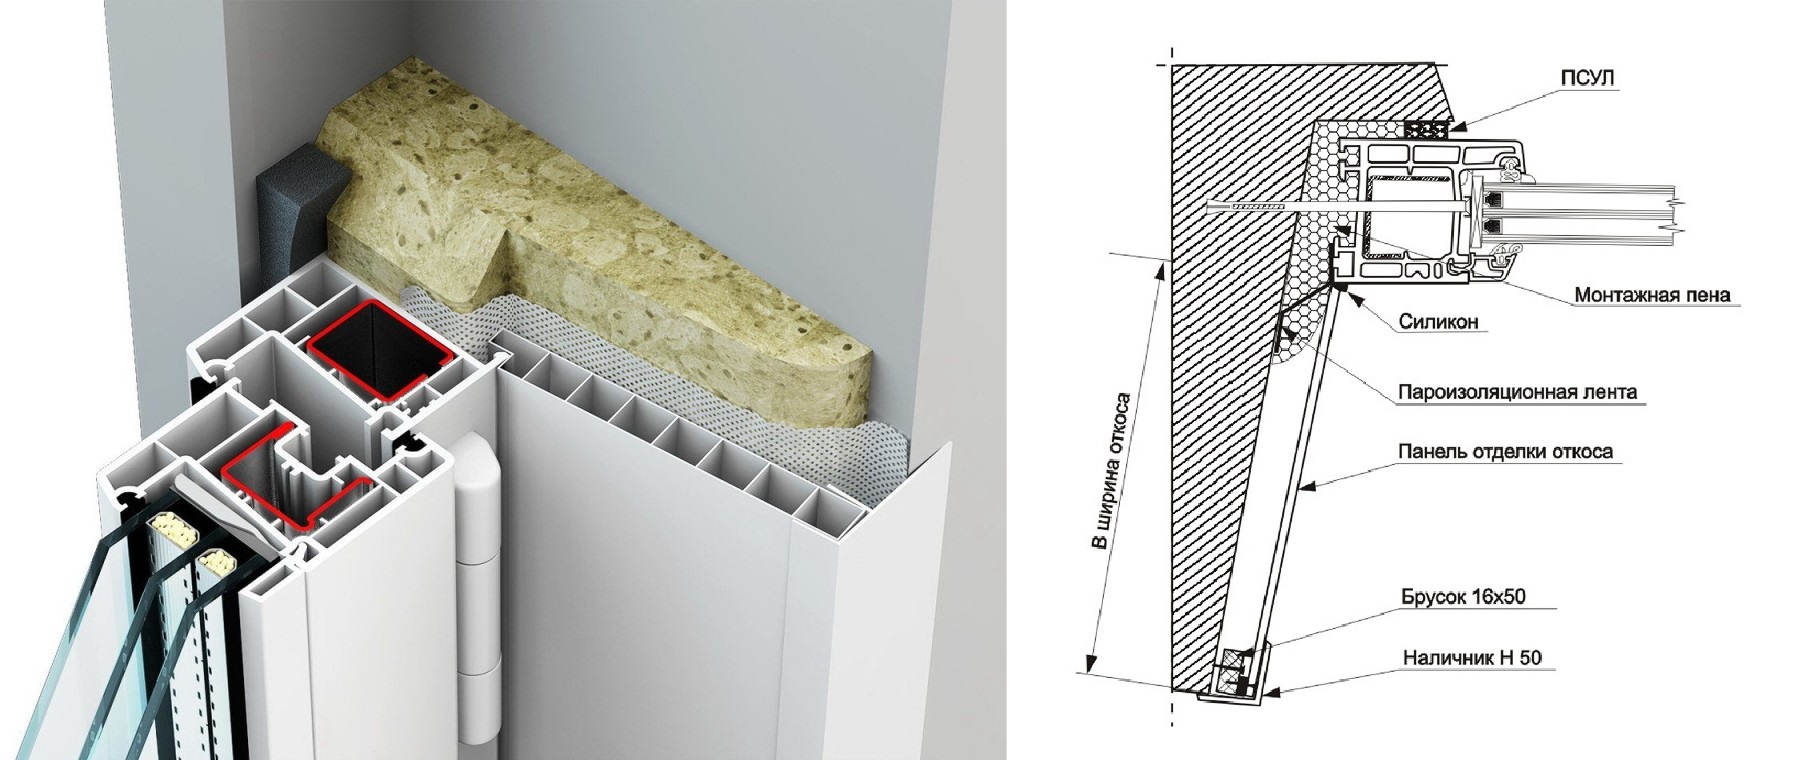 Откосы из сэндвич-панелей своими руками: как сделать и установить оконные конструкции, как правильно крепить и стыковать материал при монтаже?